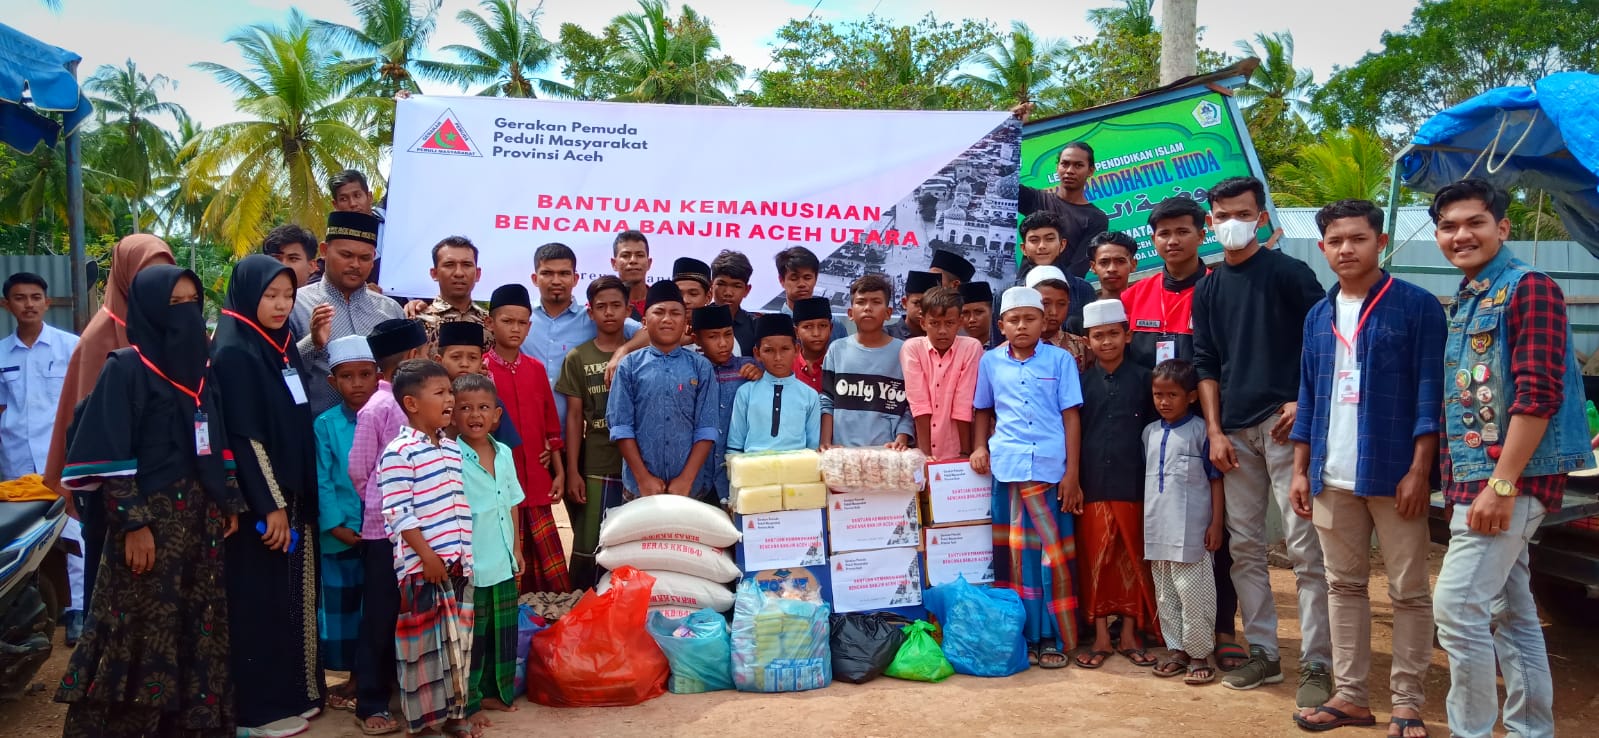 GPPM Bireuen Salurkan Bantuan untuk LPI Raudhatul Huda Aceh Utara